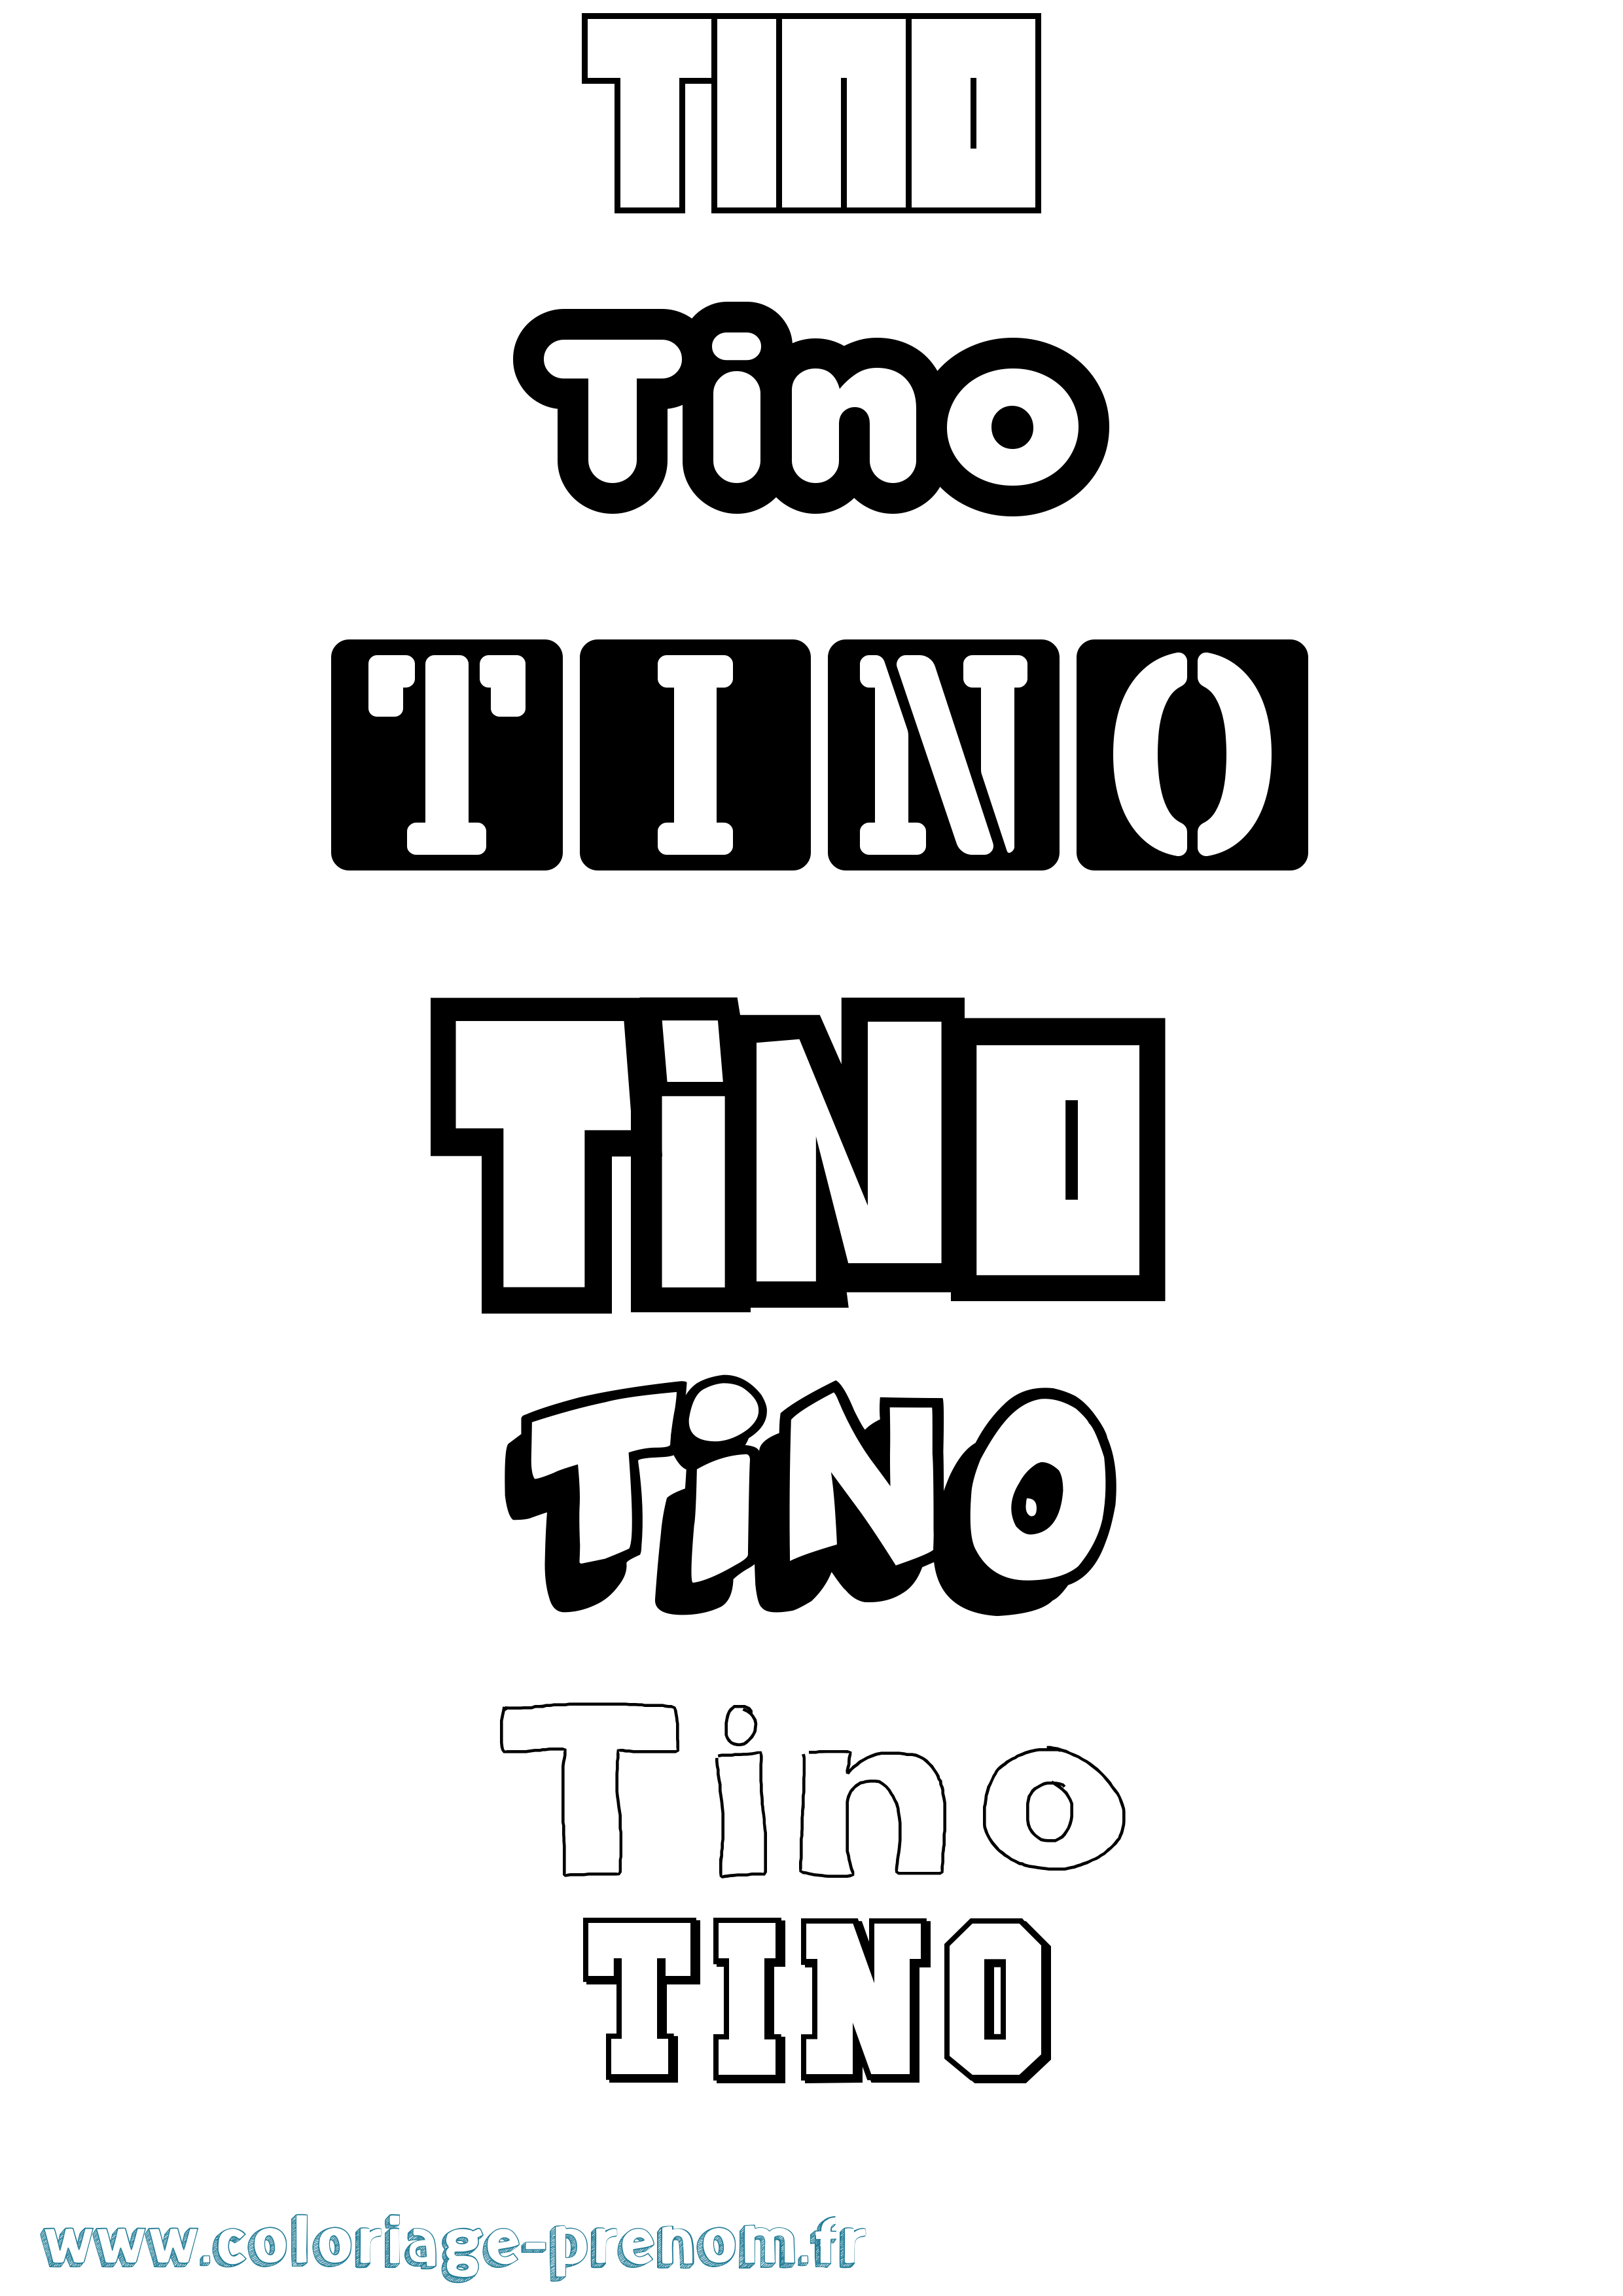 Coloriage prénom Tino Simple